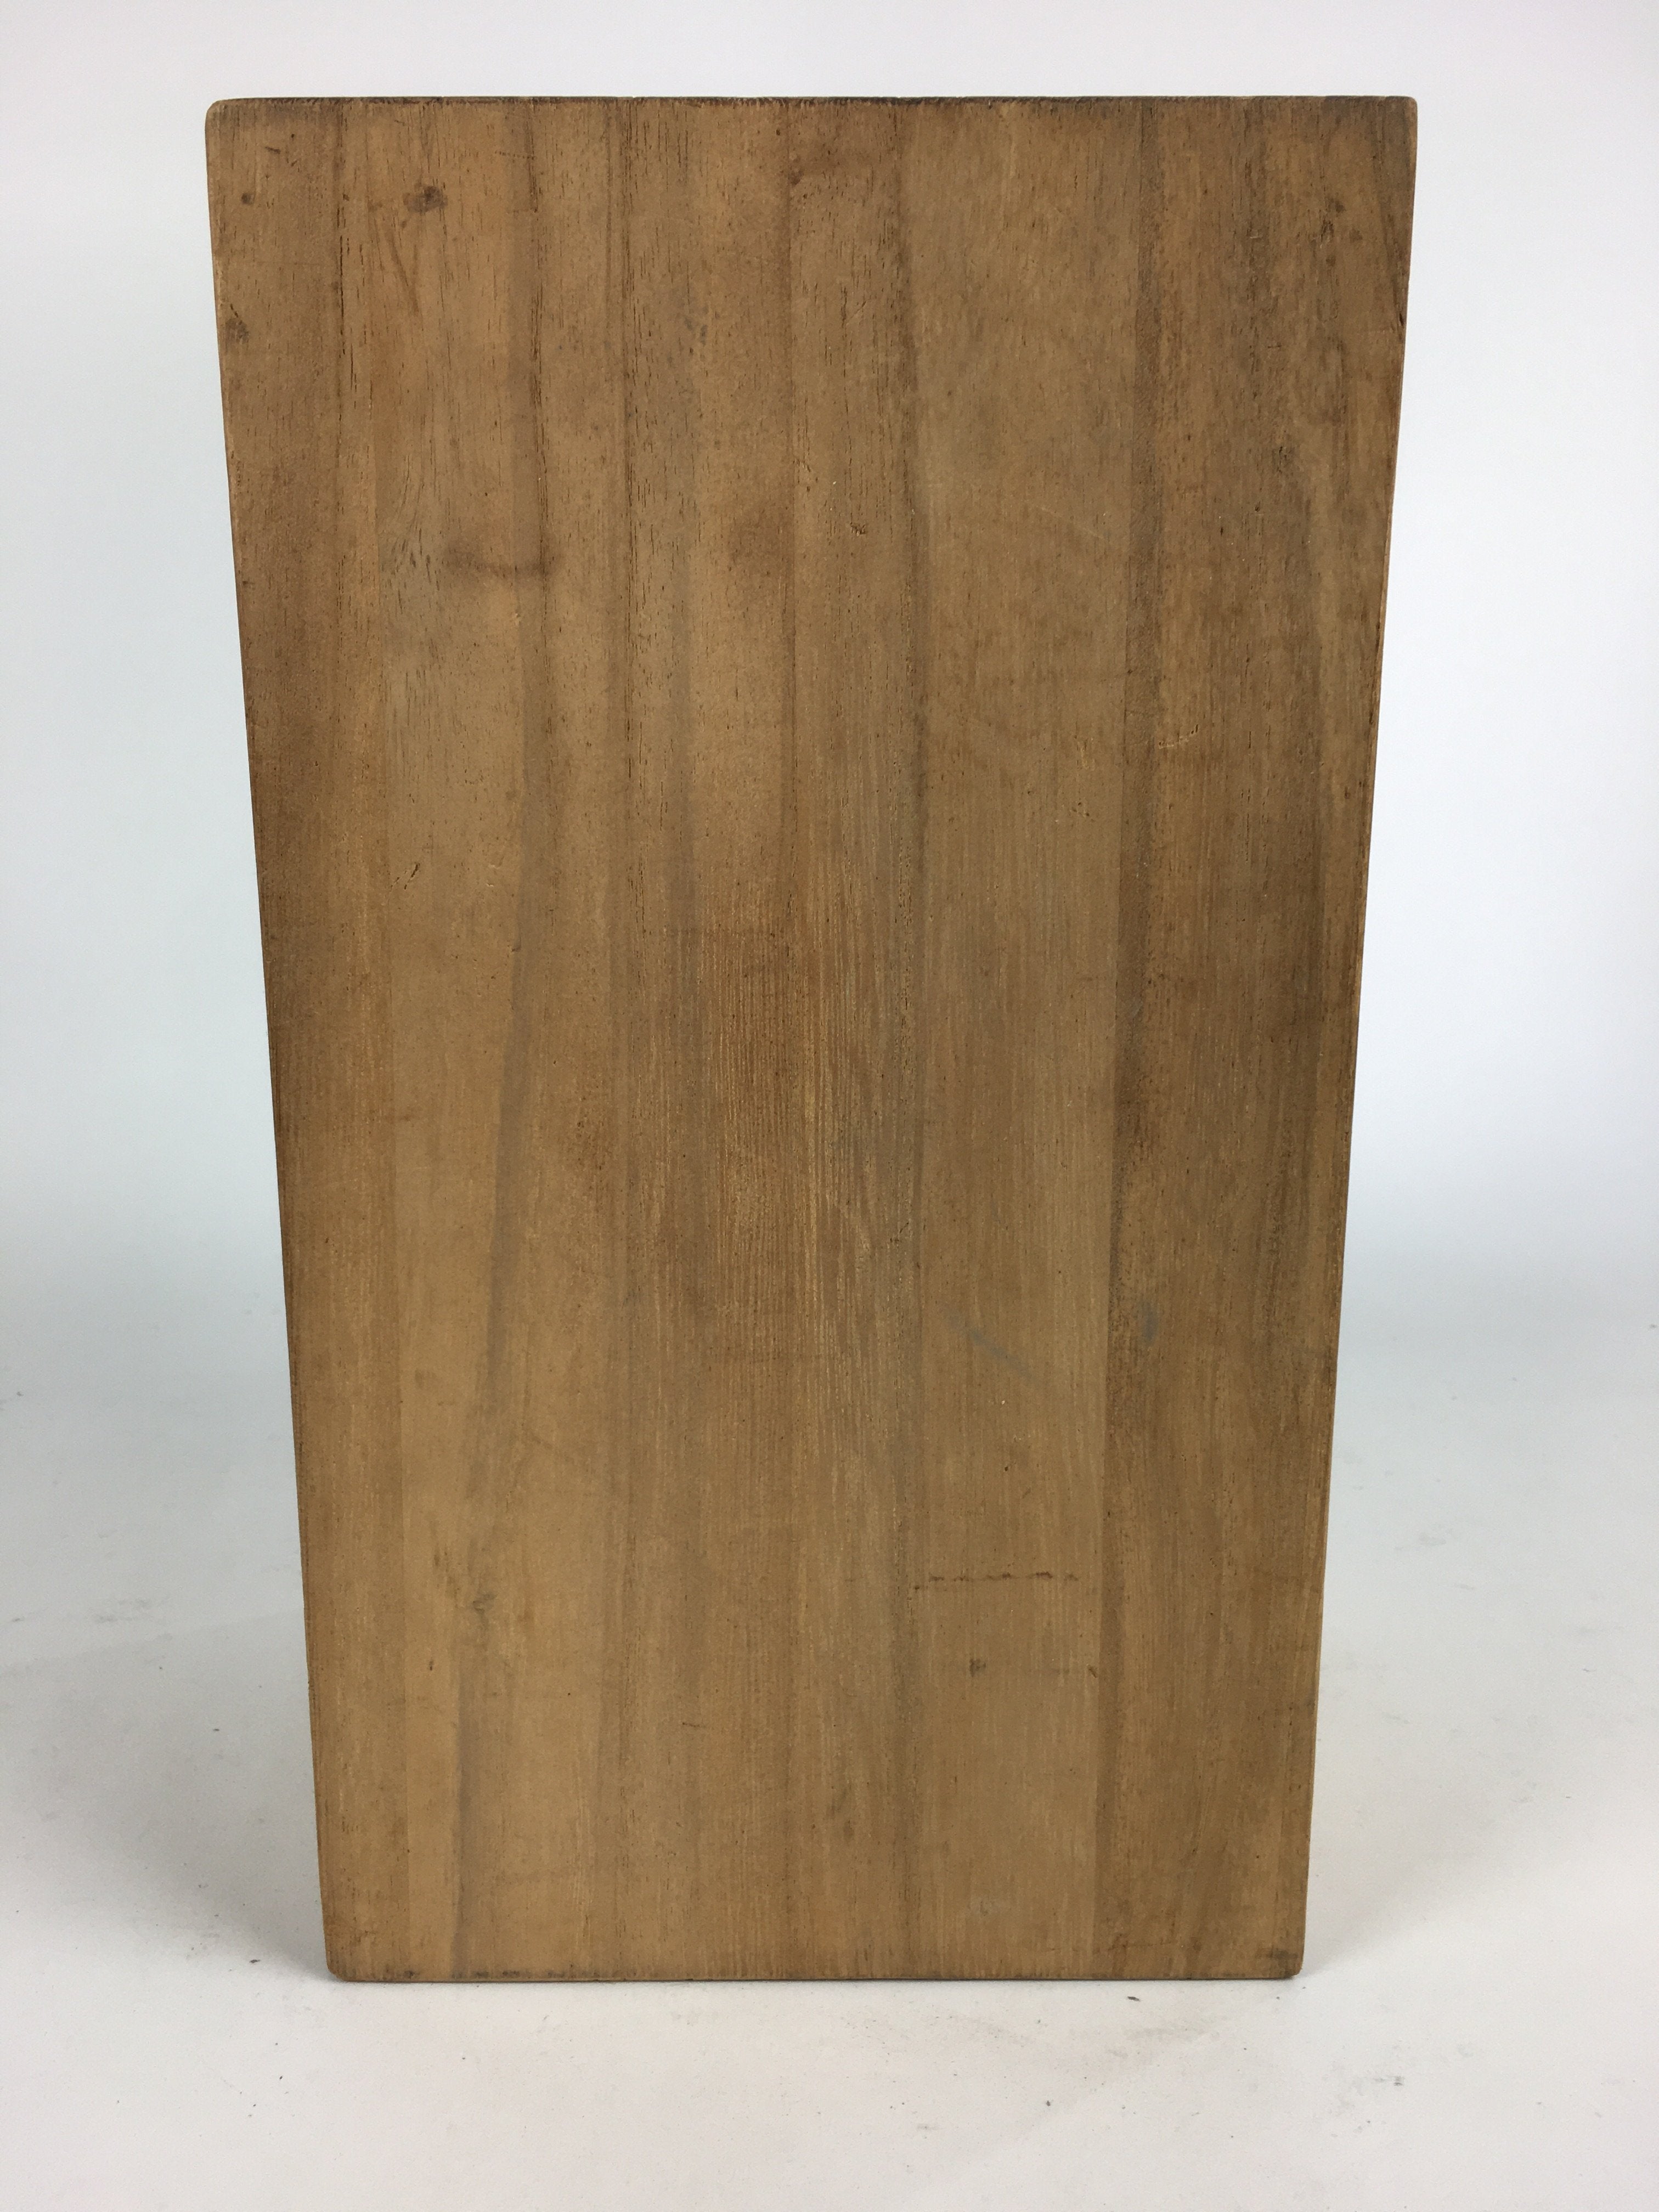 Japanese Wooden Storage Box Vtg Pottery Hako Inside 17.3x15x32cm WB868